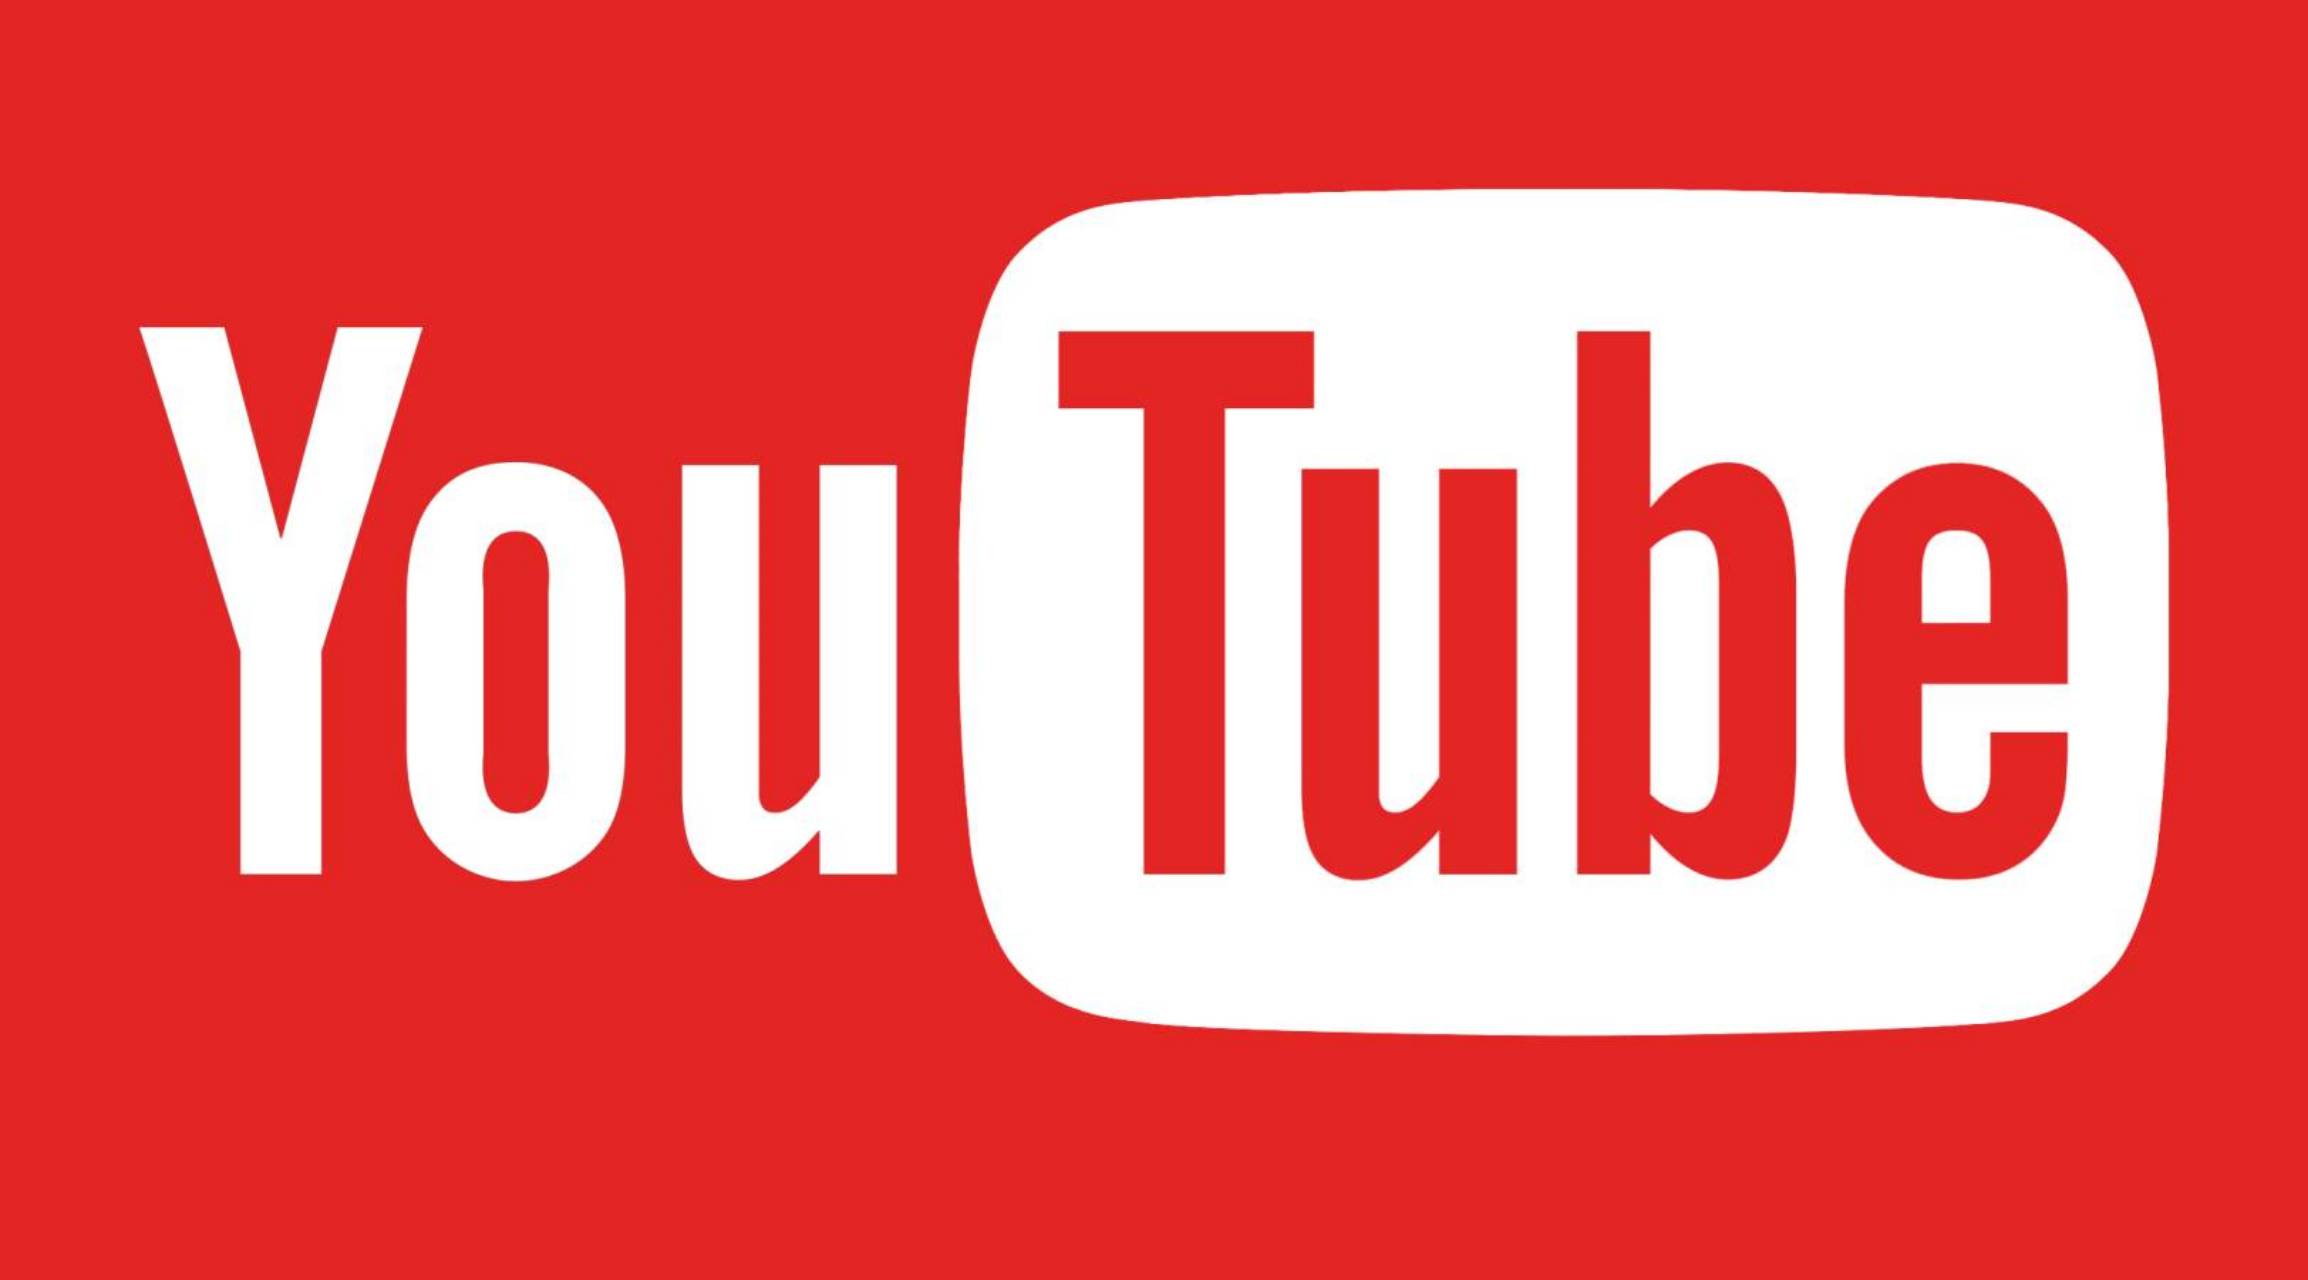 YouTube Den nye opdatering udgivet til telefoner tablets